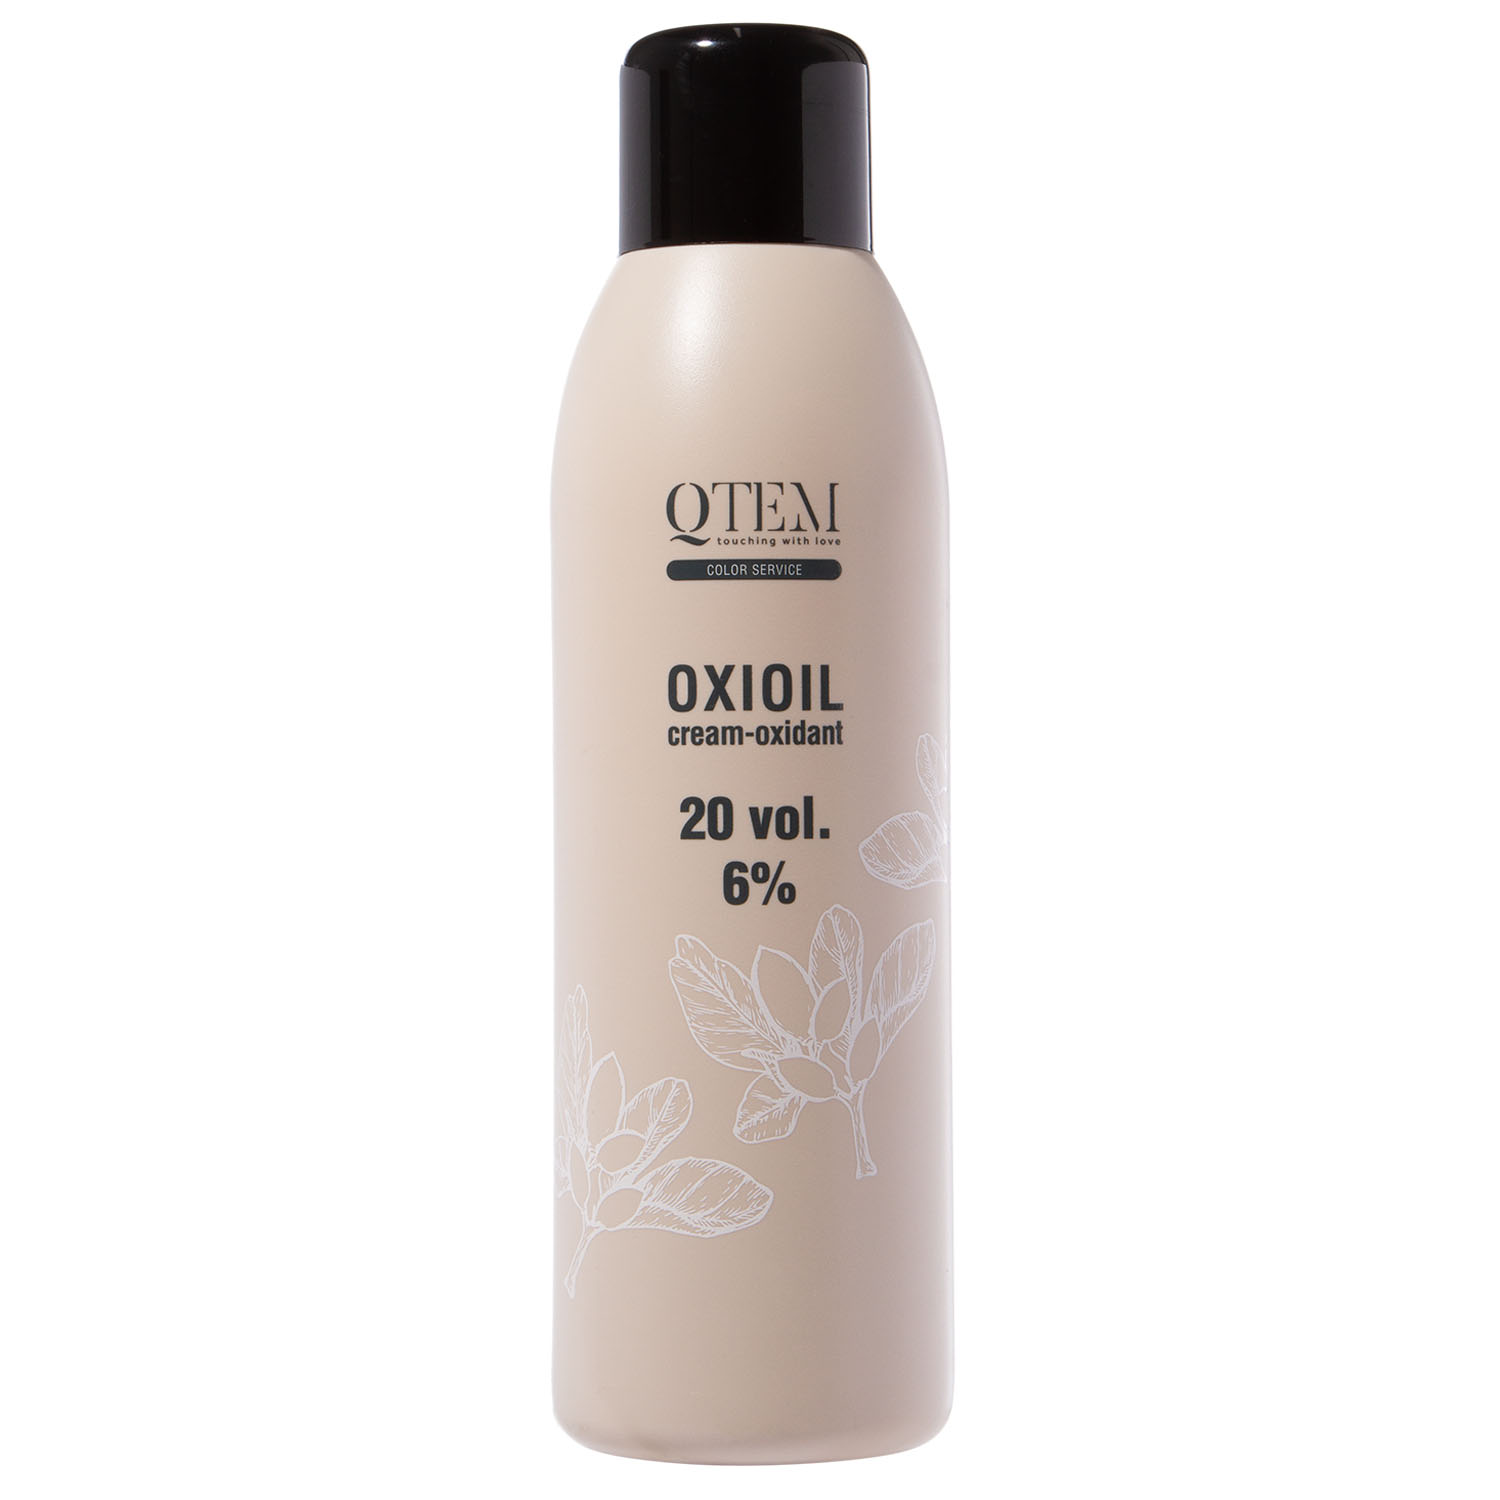 Кьютэм Универсальный крем-оксидант Oxioil 6% (20 Vol.), 1000 мл (Qtem, Color Service) фото 0